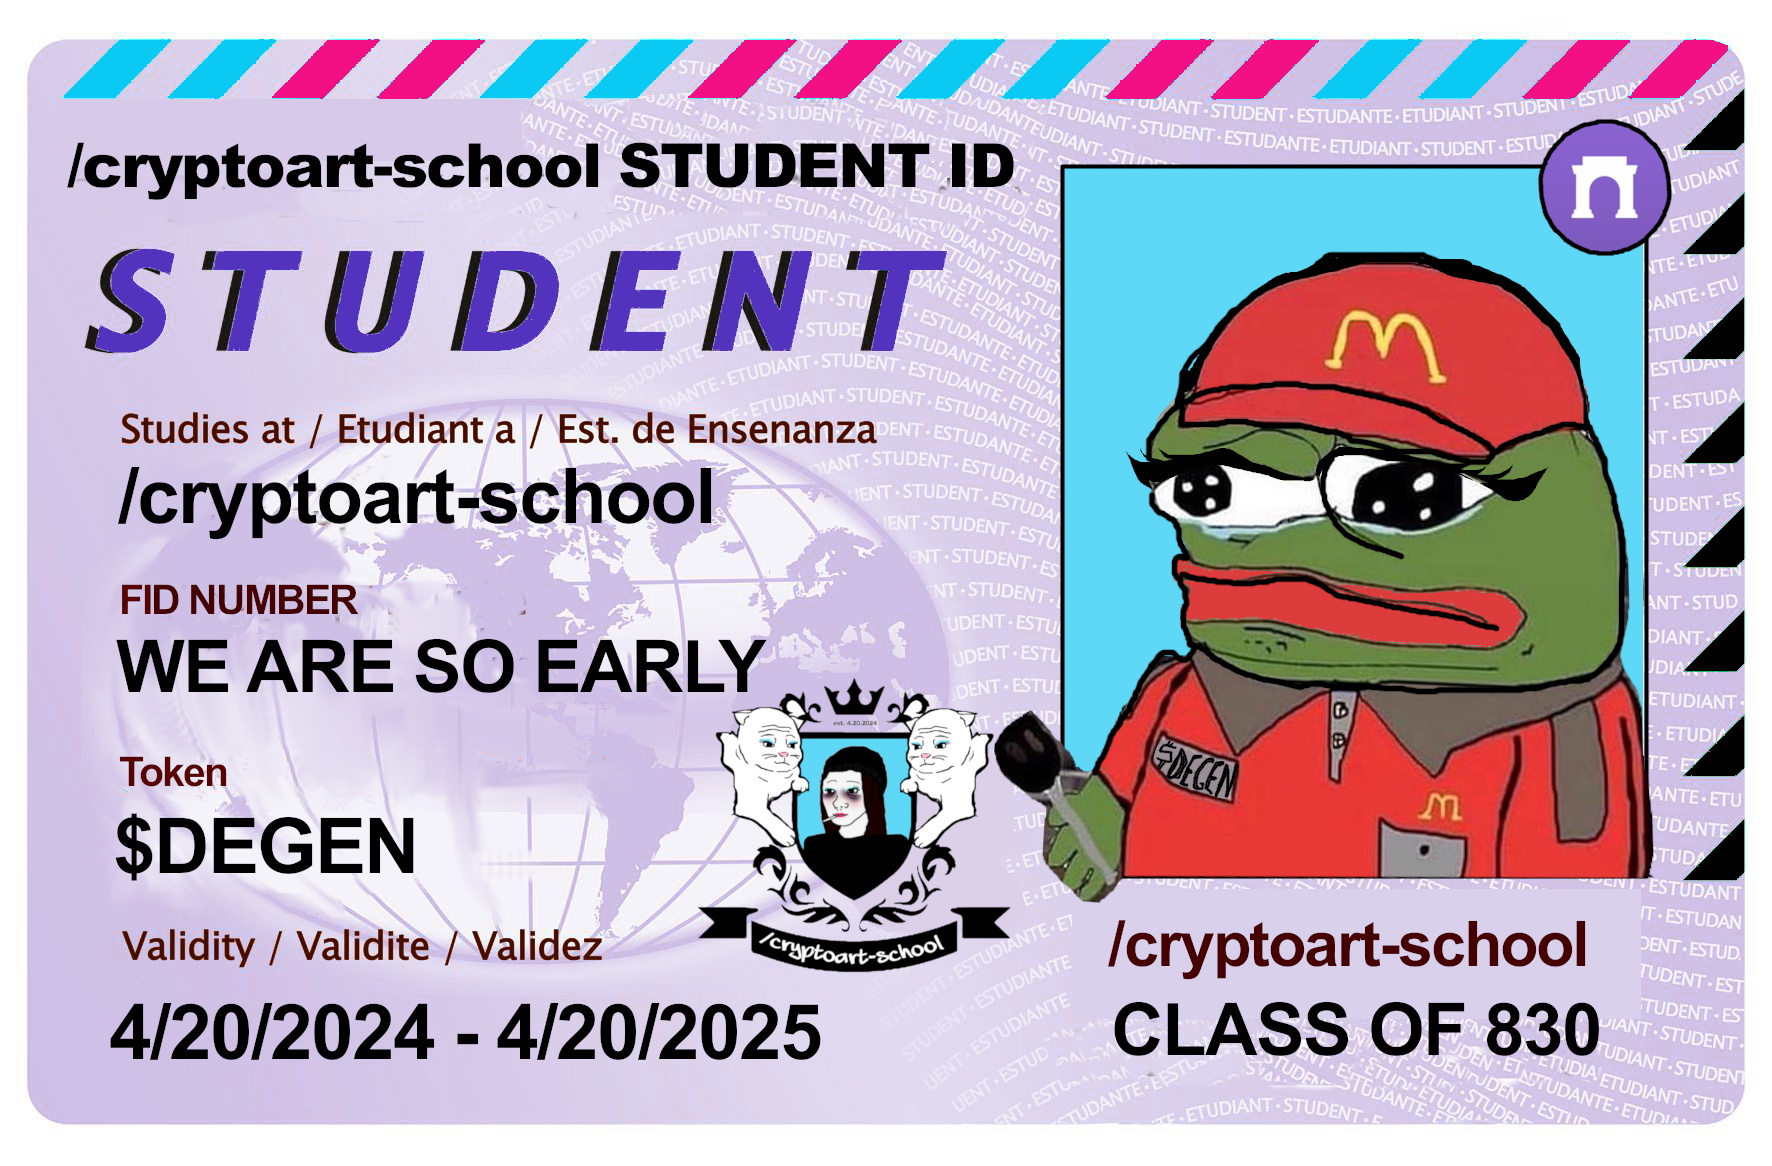 cryptoart-school student ID: pepe